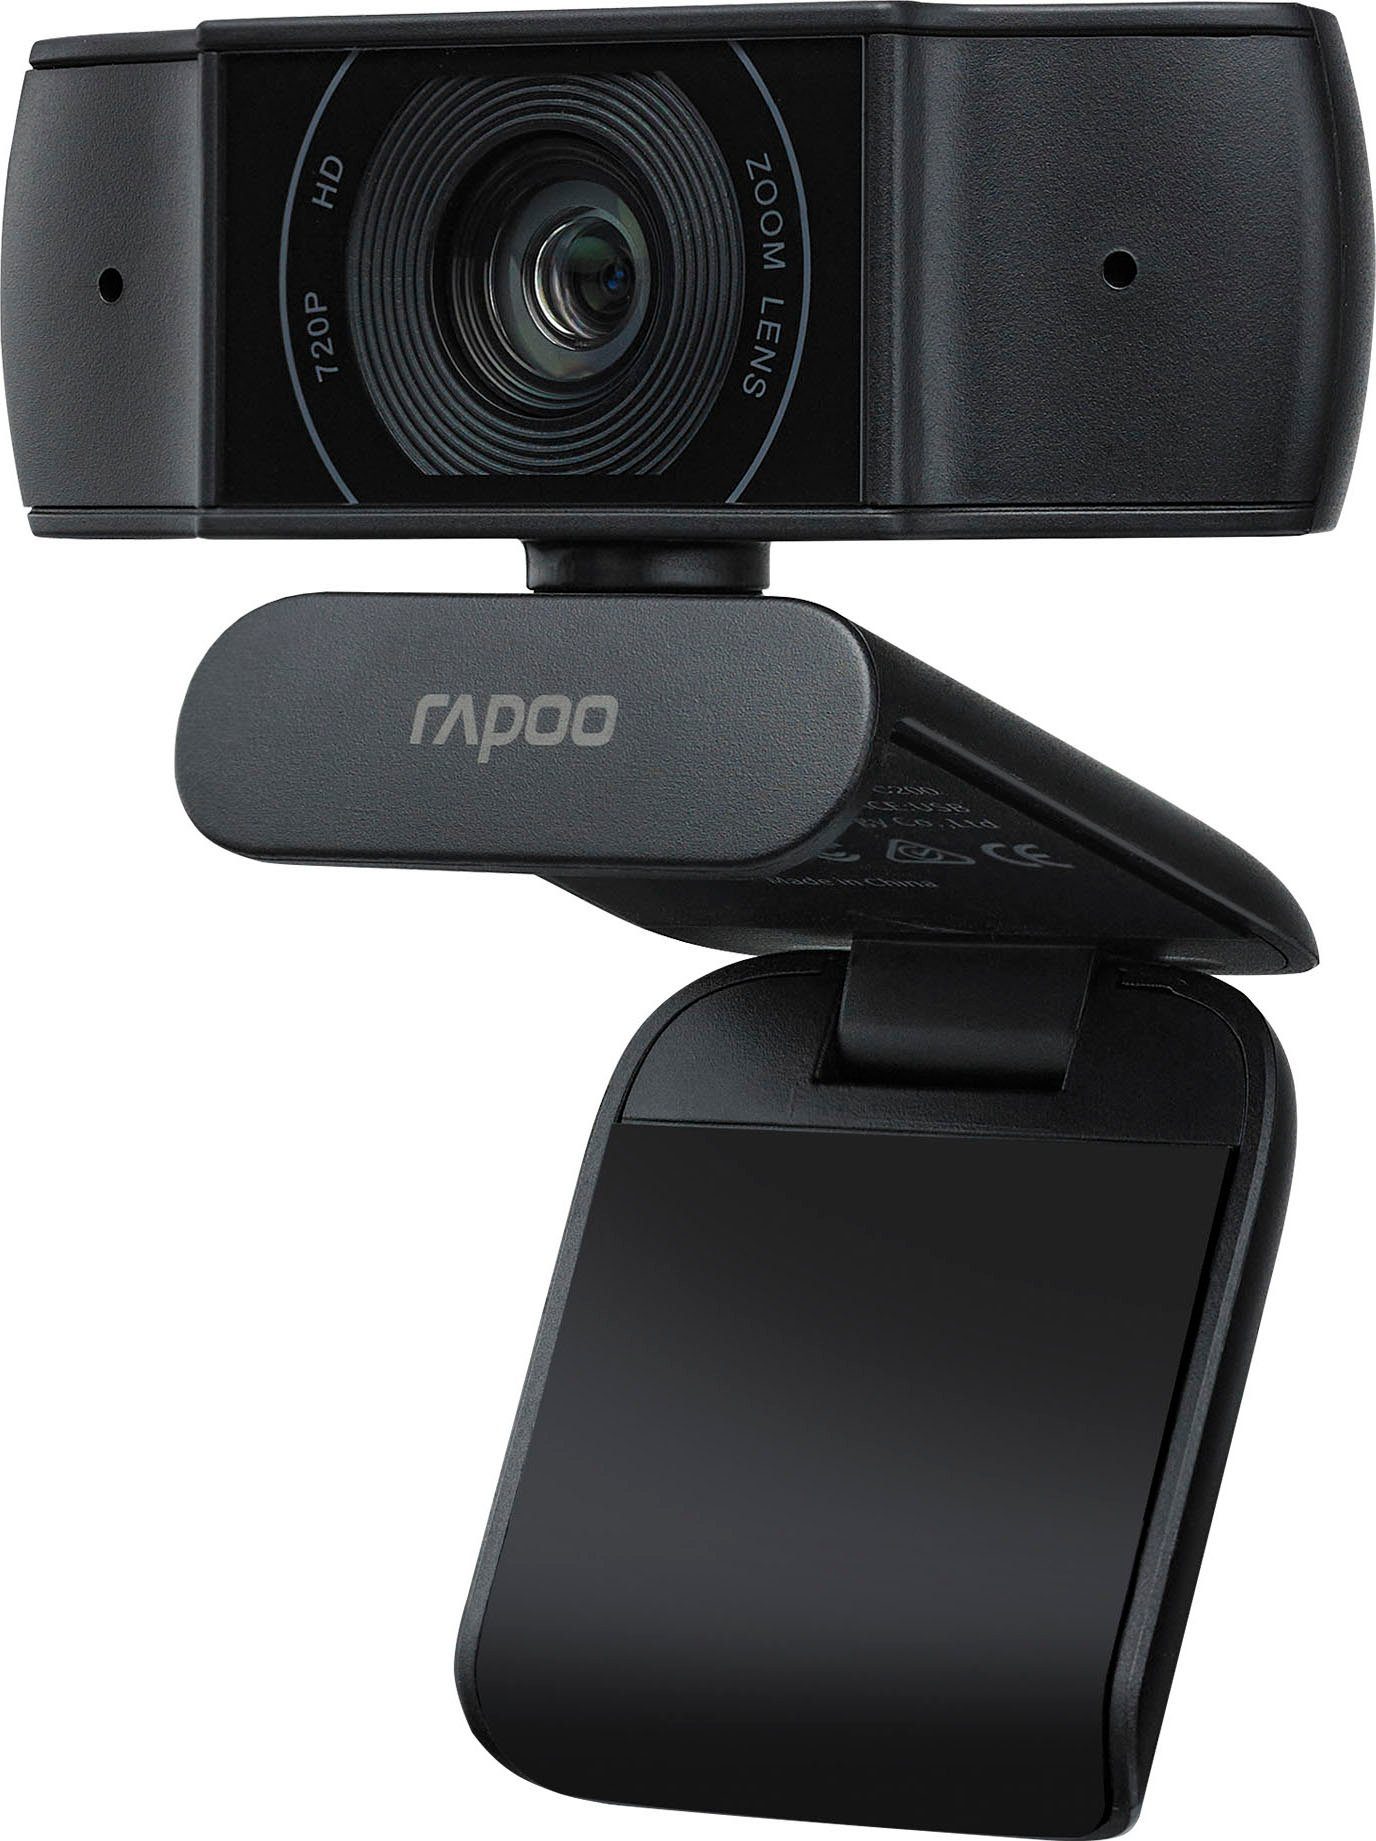 Rapoo XW170 720p (HD) Webcam HD Webcam